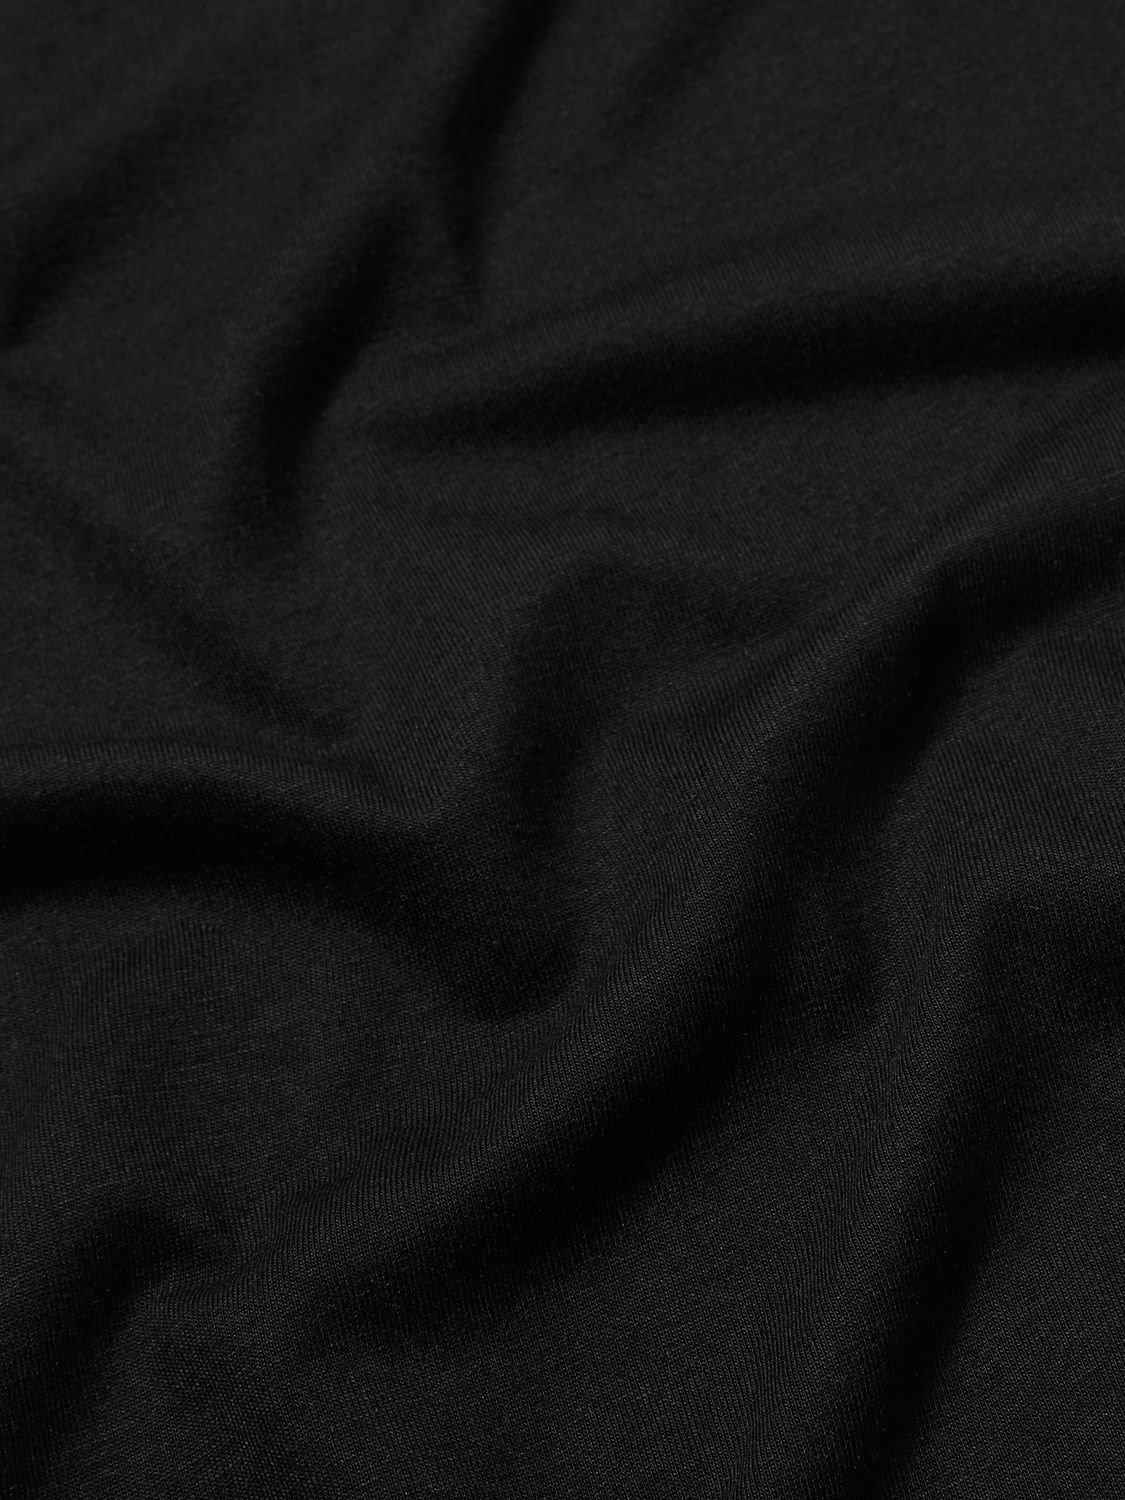 Boden Supersoft Boat Neck T-Shirt, Black, 8